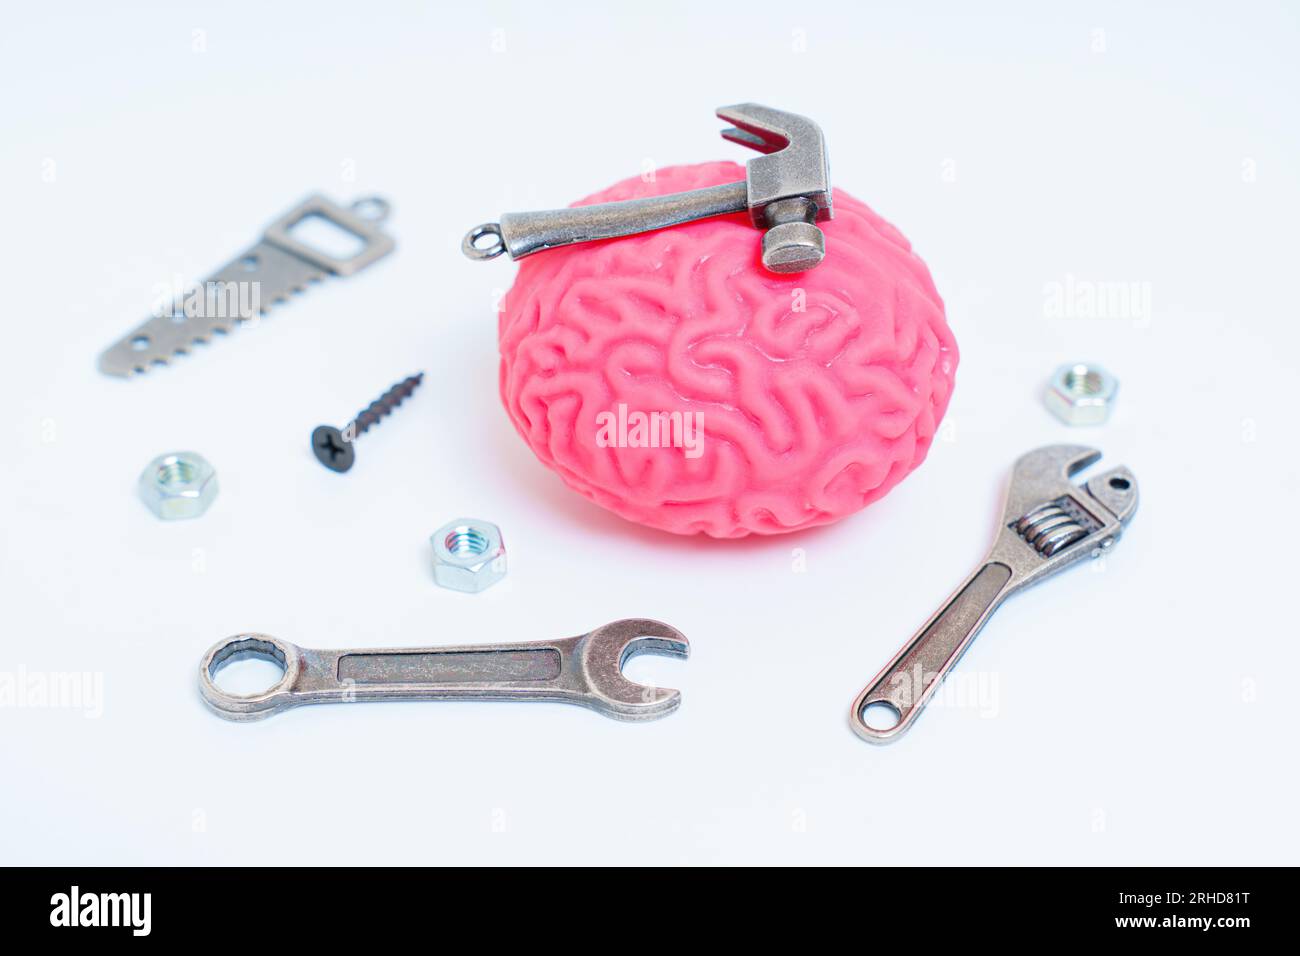 Menschliches Gehirnmodell begleitet von einem Satz von Miniatur-Handwerkzeugen wie Hammer, Säge, Schraubenschlüssel und Befestigungselemente. Gehirnforschung, kognitive Entwicklung, Stockfoto